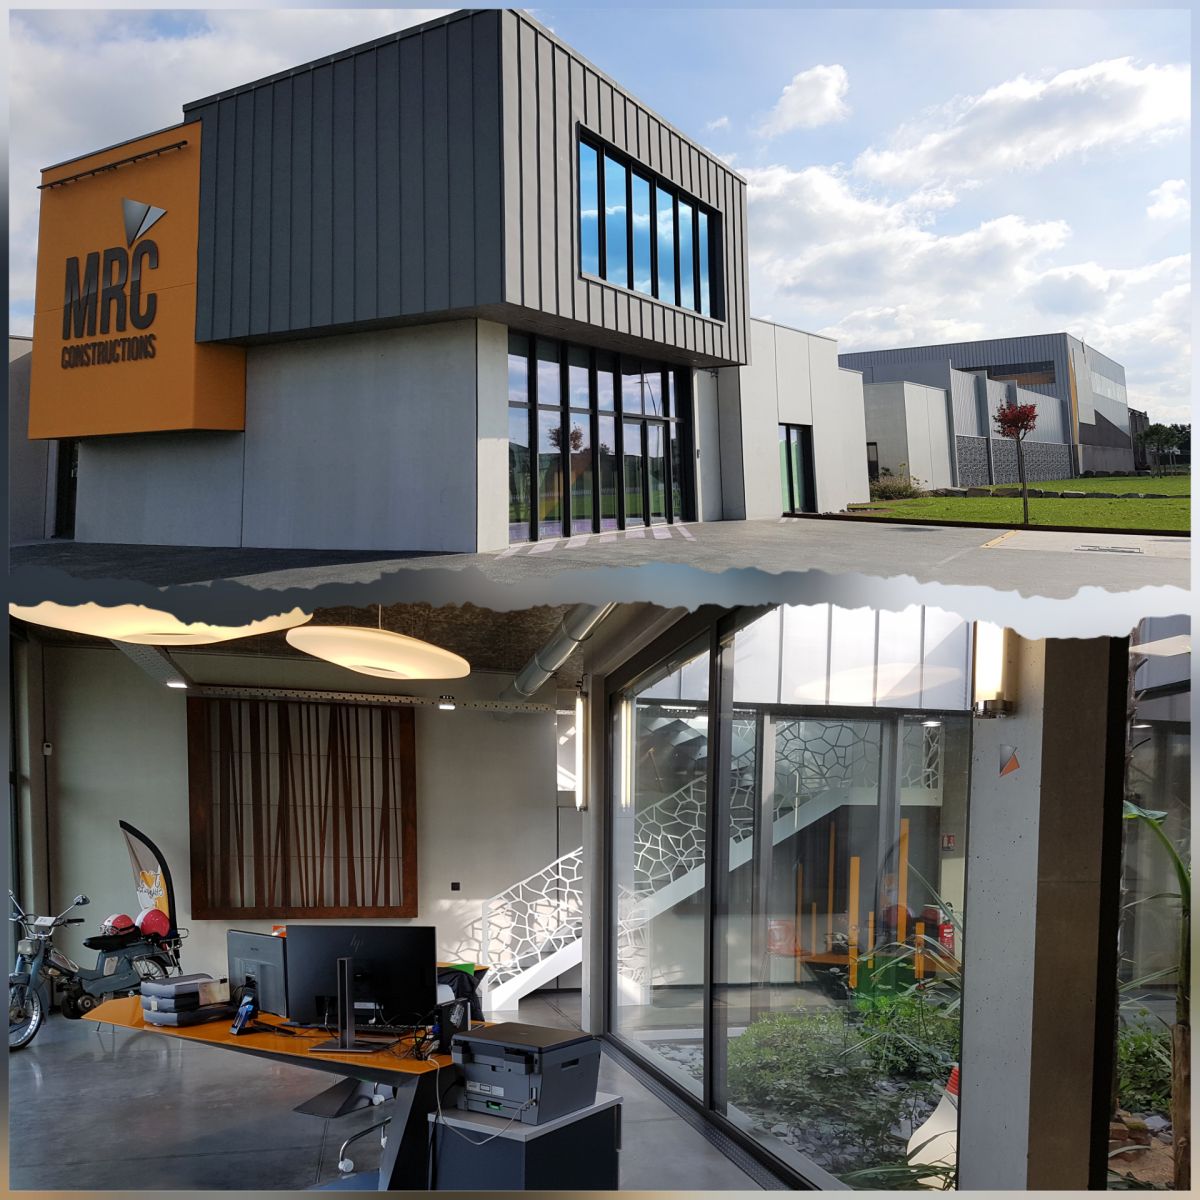 Les locaux de MRC Constructions, près de Montaigu en Vendée